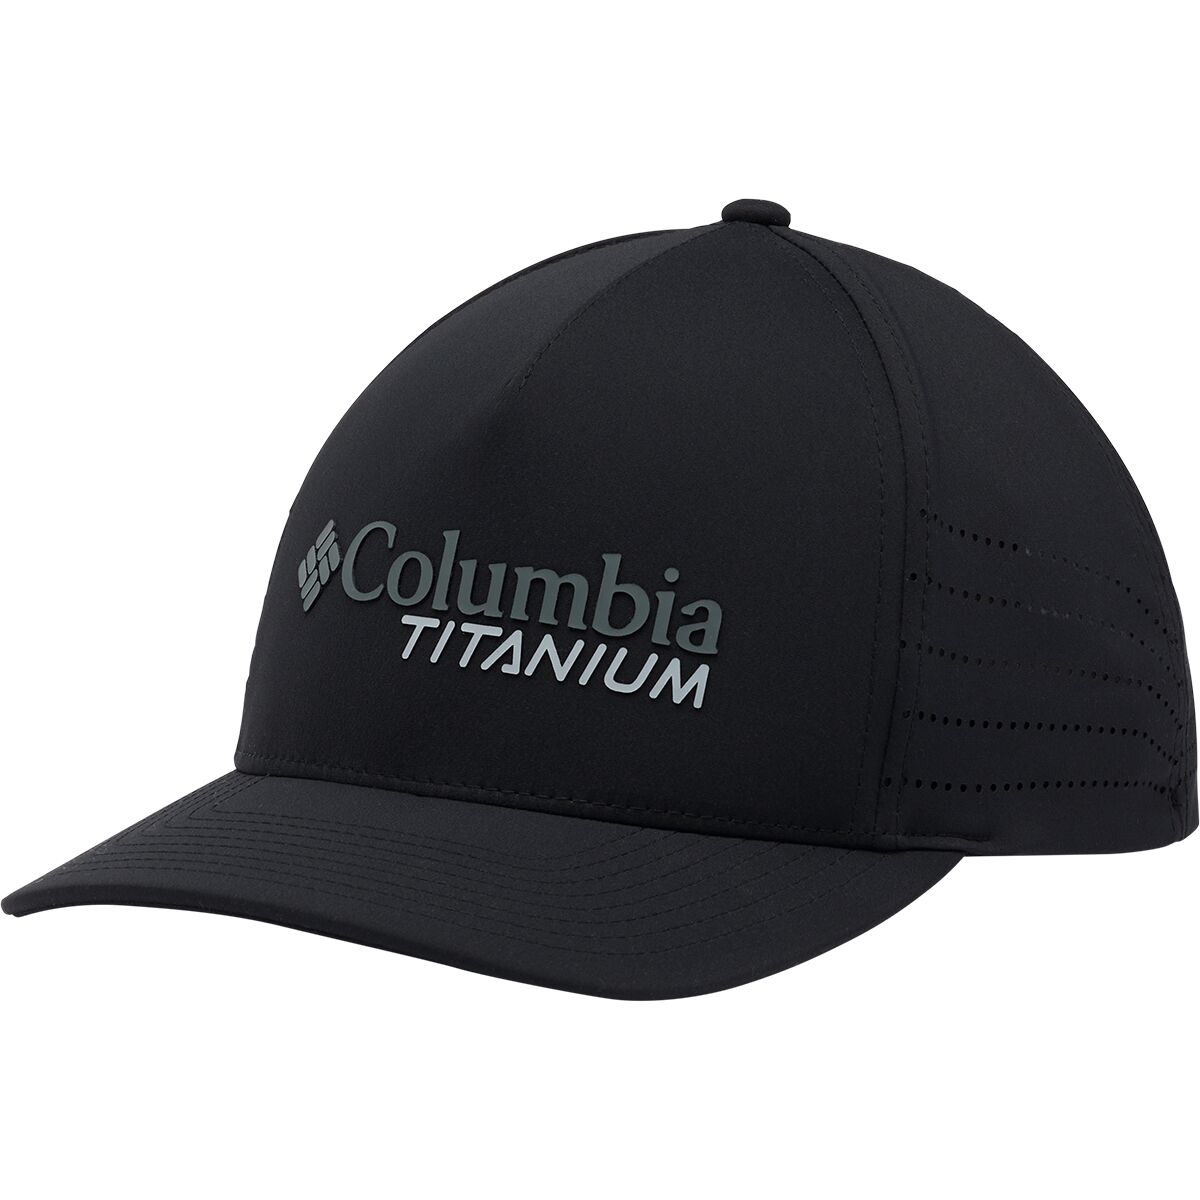 Columbia Titanium Ball Cap